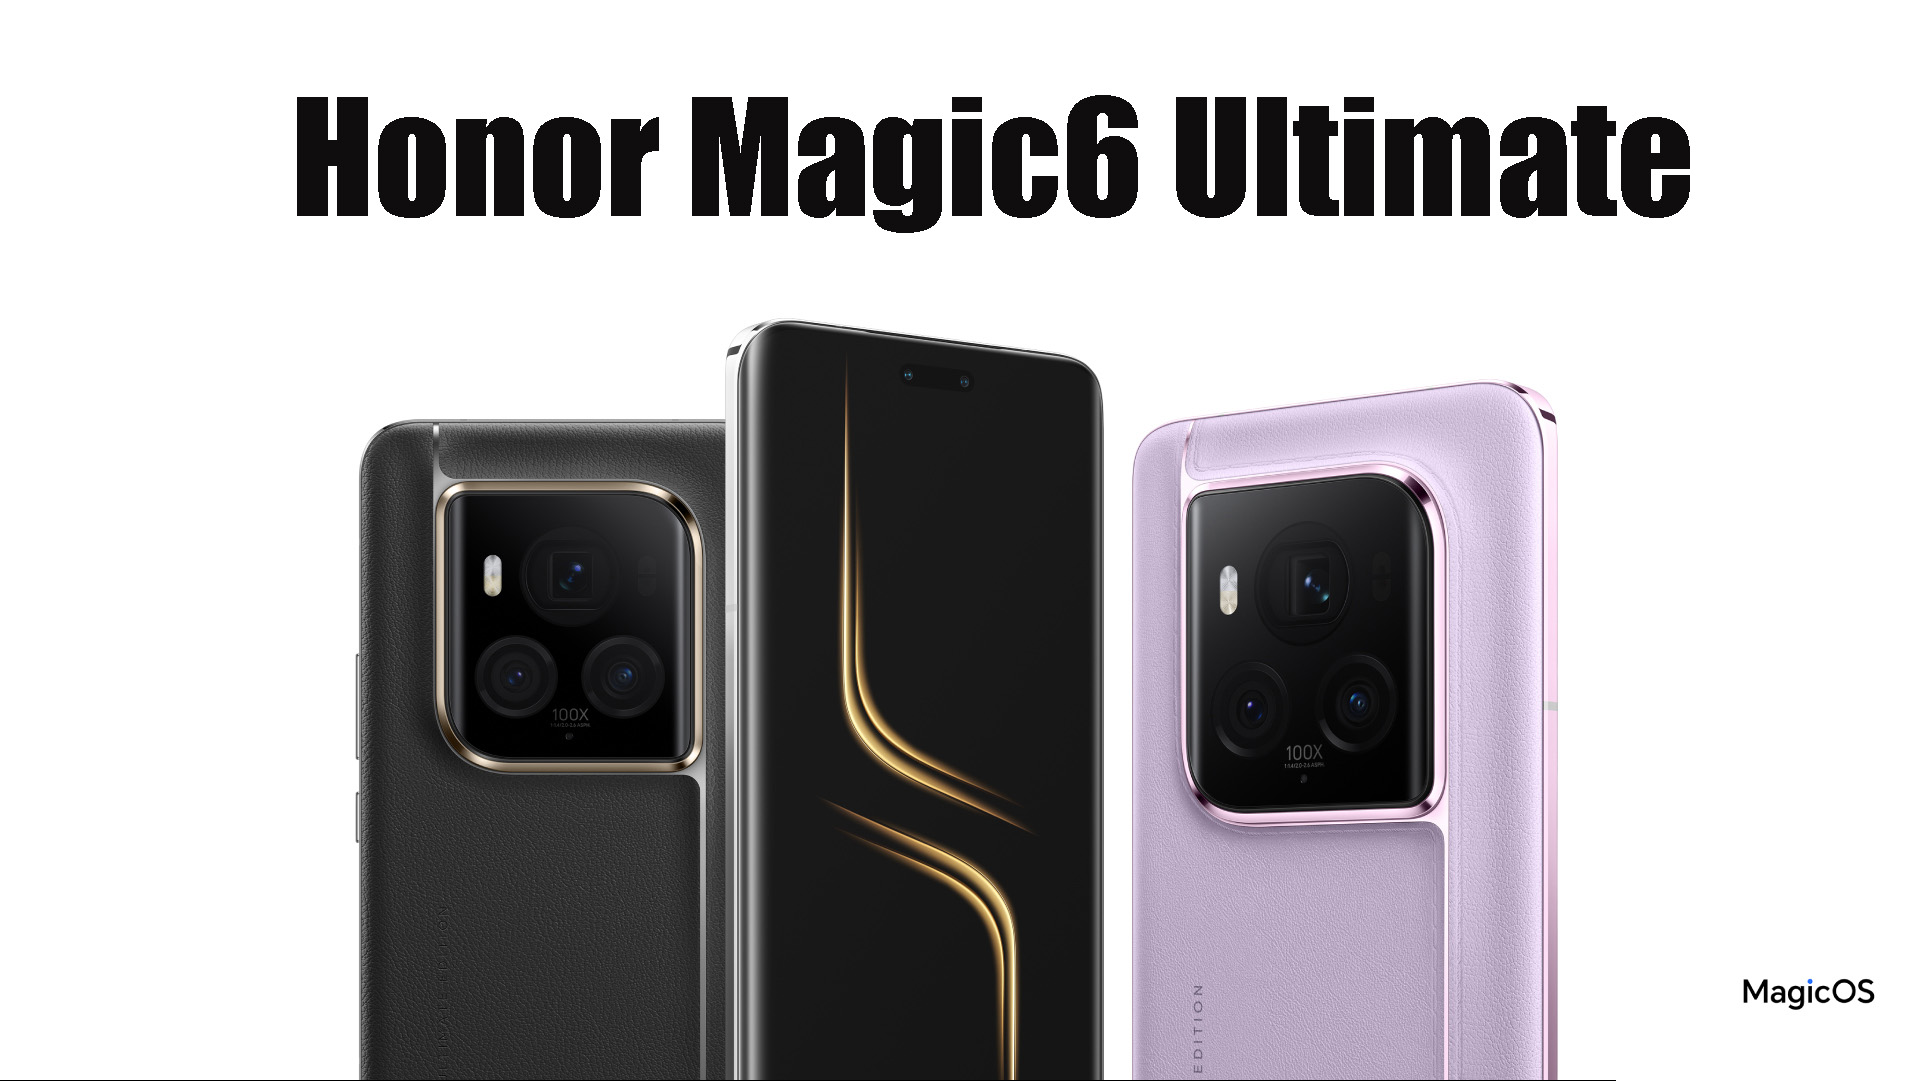 Honor Magic6 Ultimate